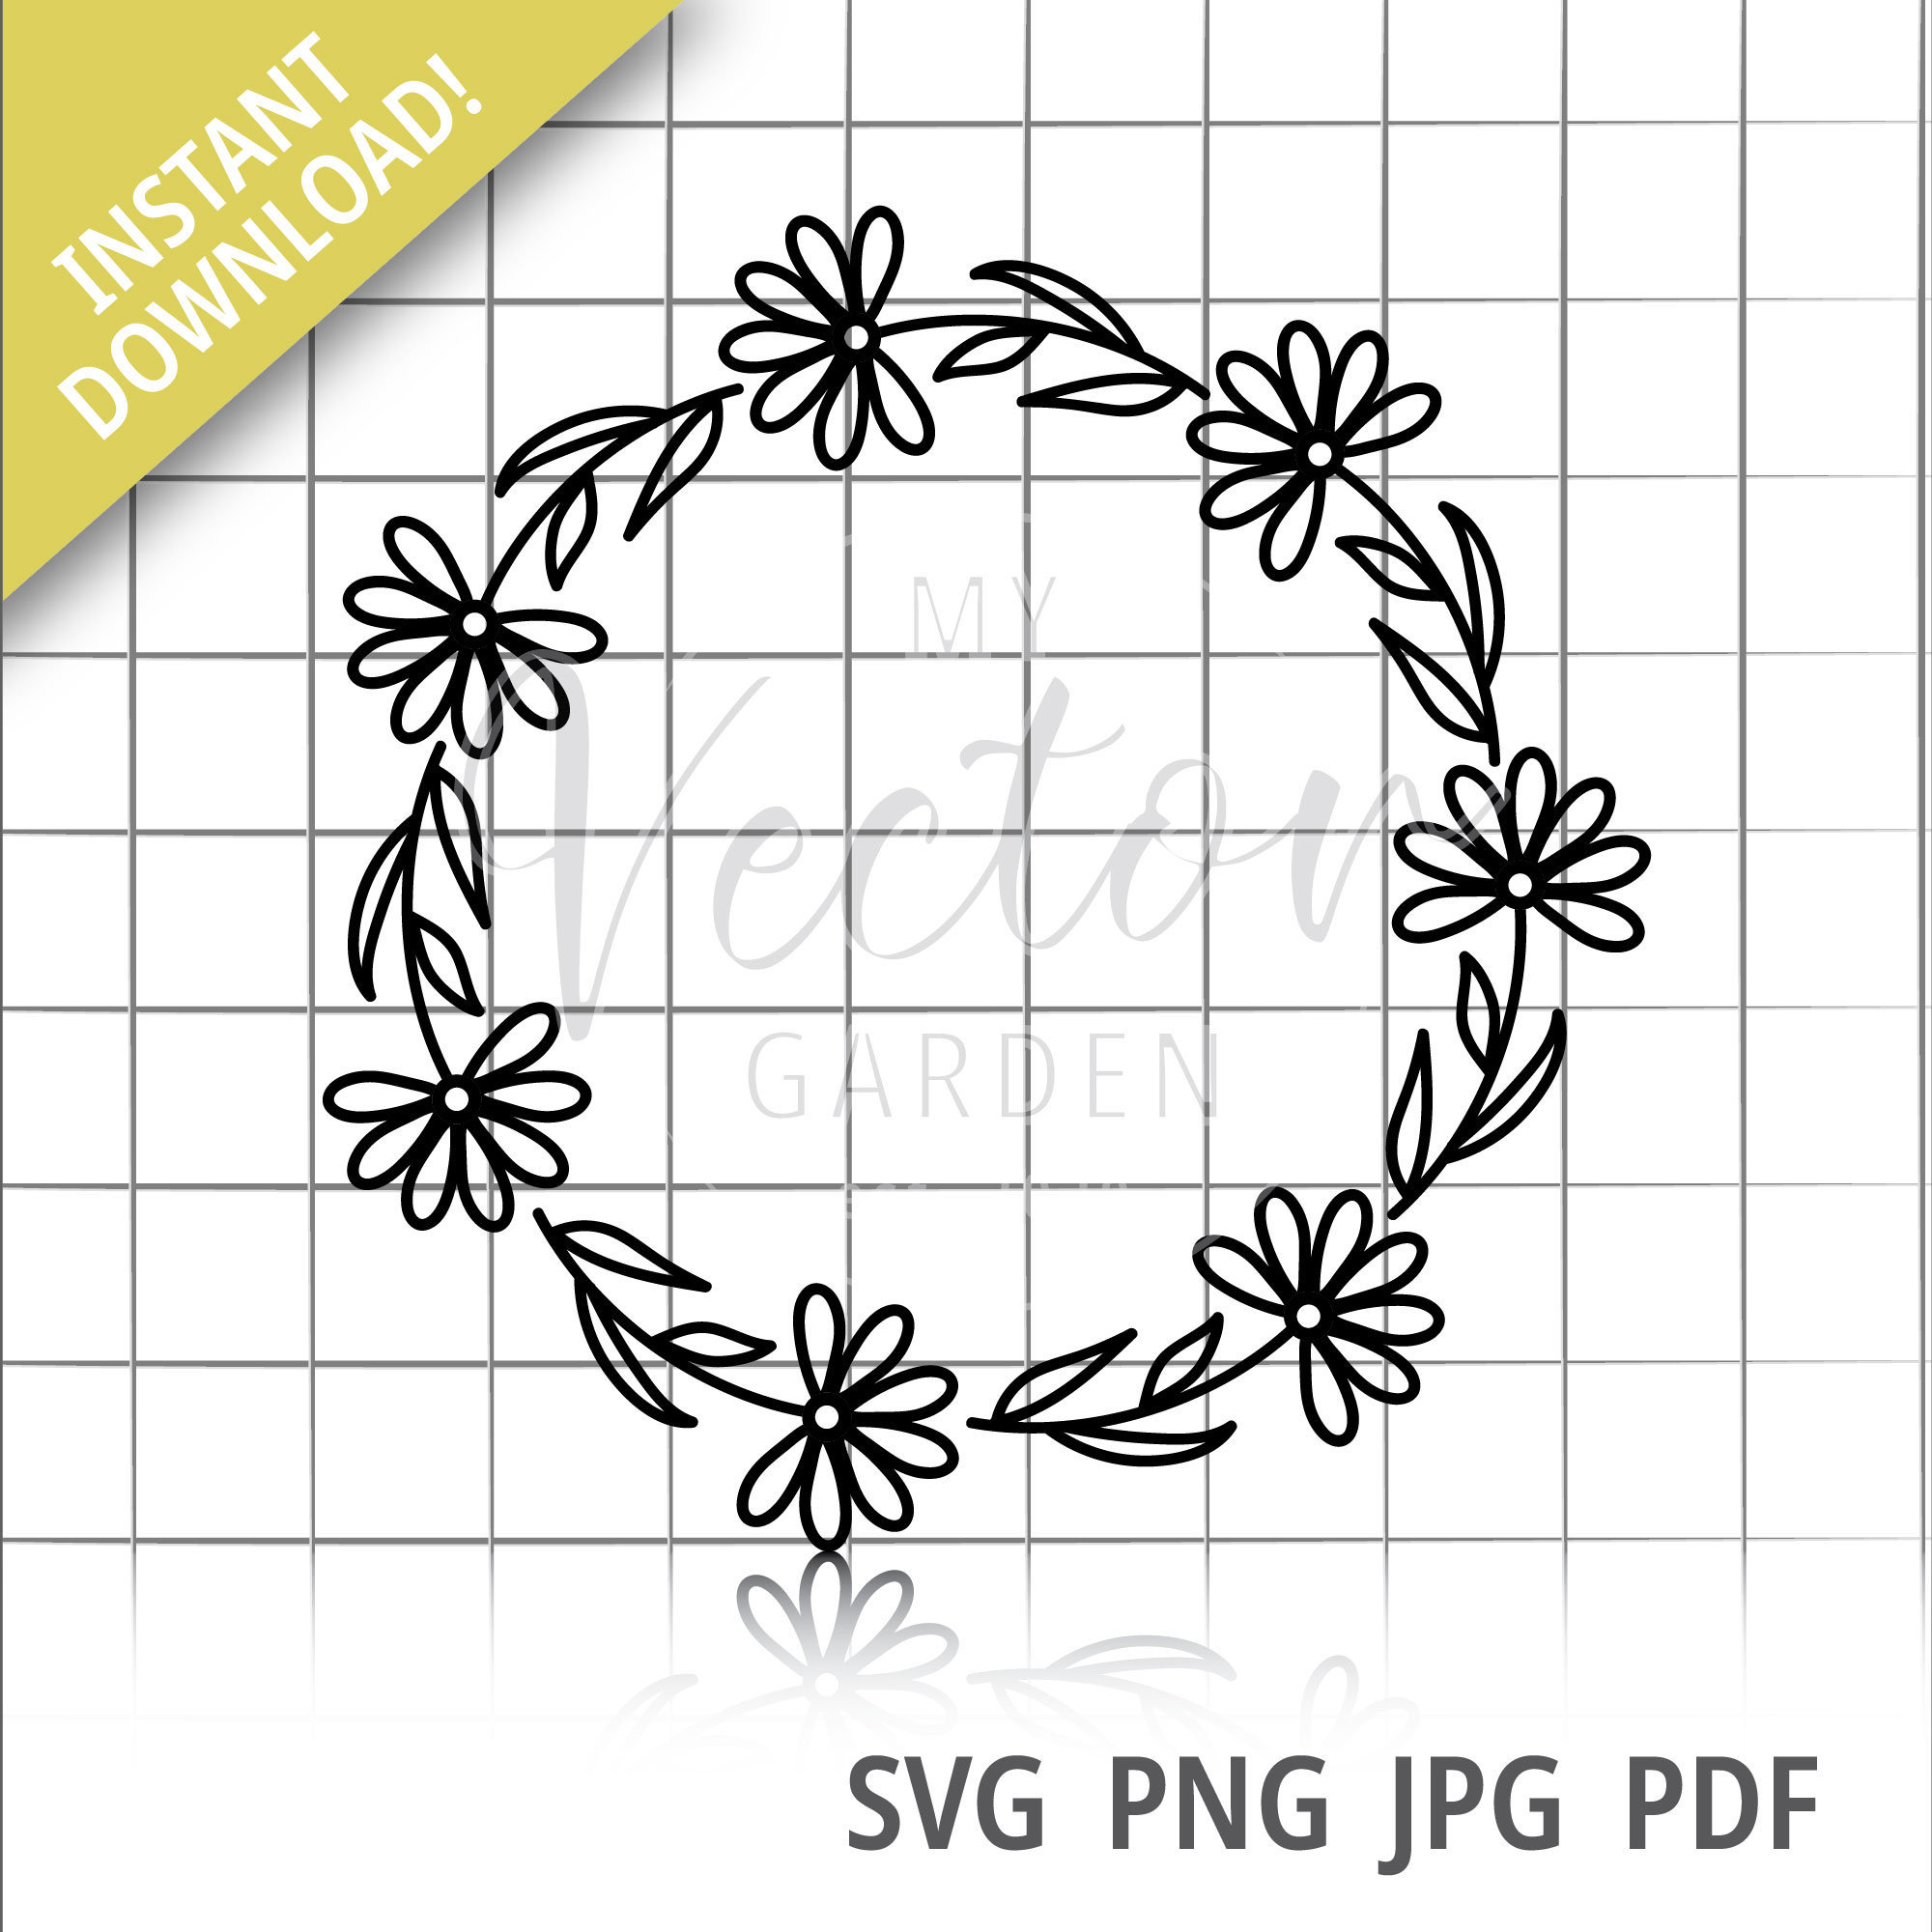 Rose Circle Frame Svg, Rose Svg, Wreath Svg, Flower Svg, Floral Svg - Crella